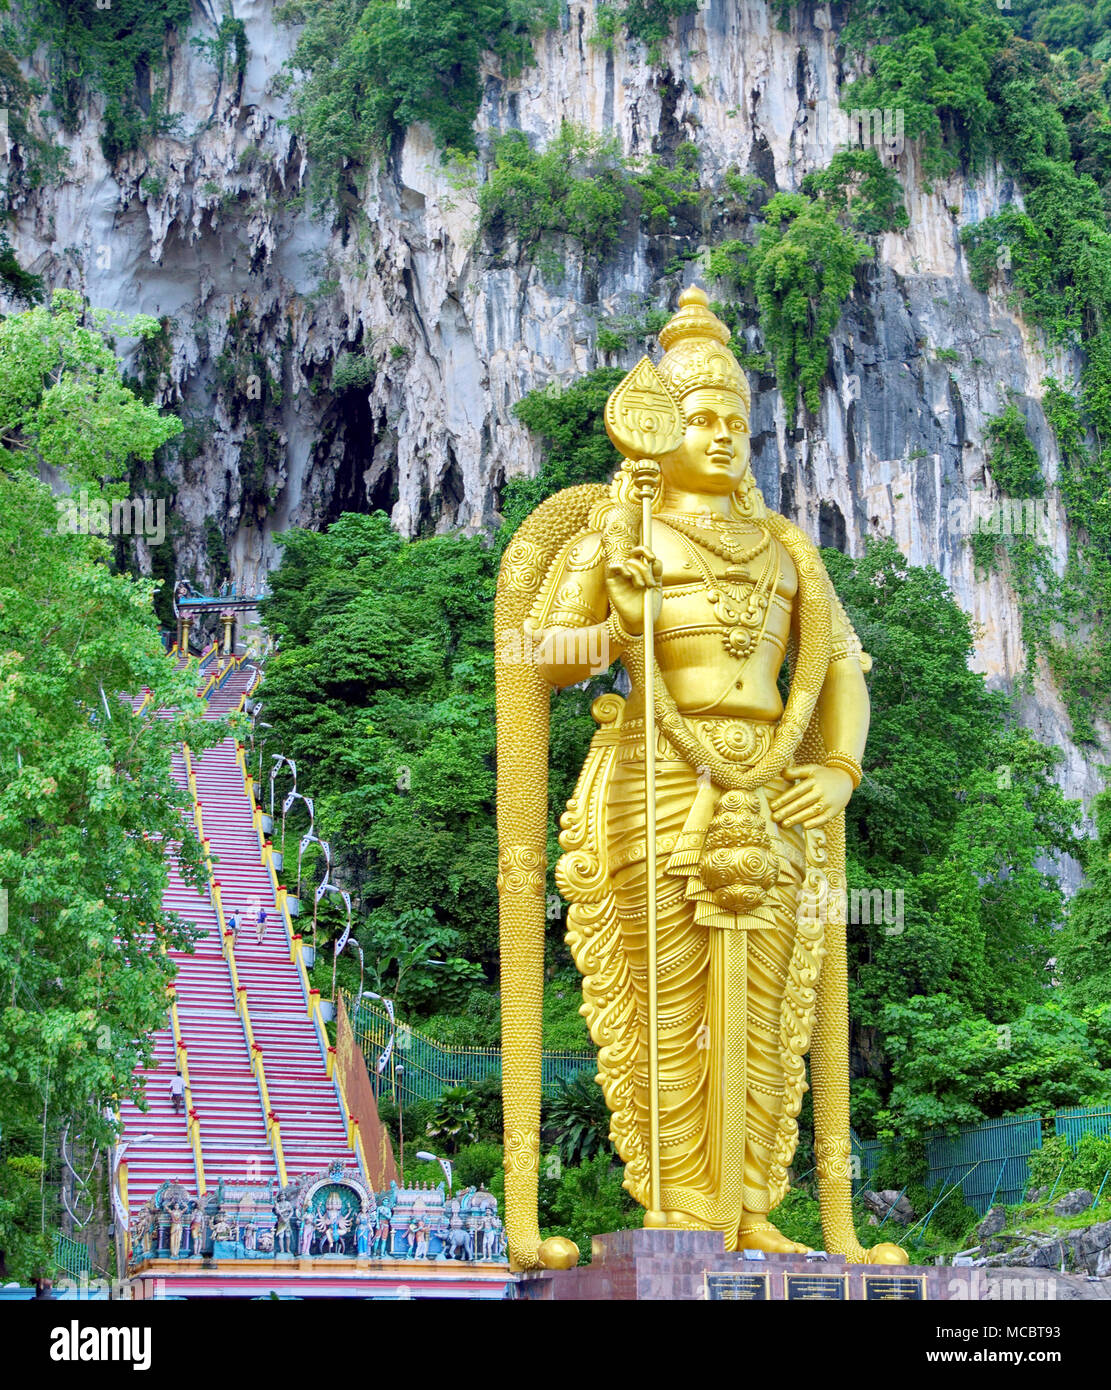 Batu Höhle, Malaysia - Statue von Lord Muragan zu Batu-Höhlen in